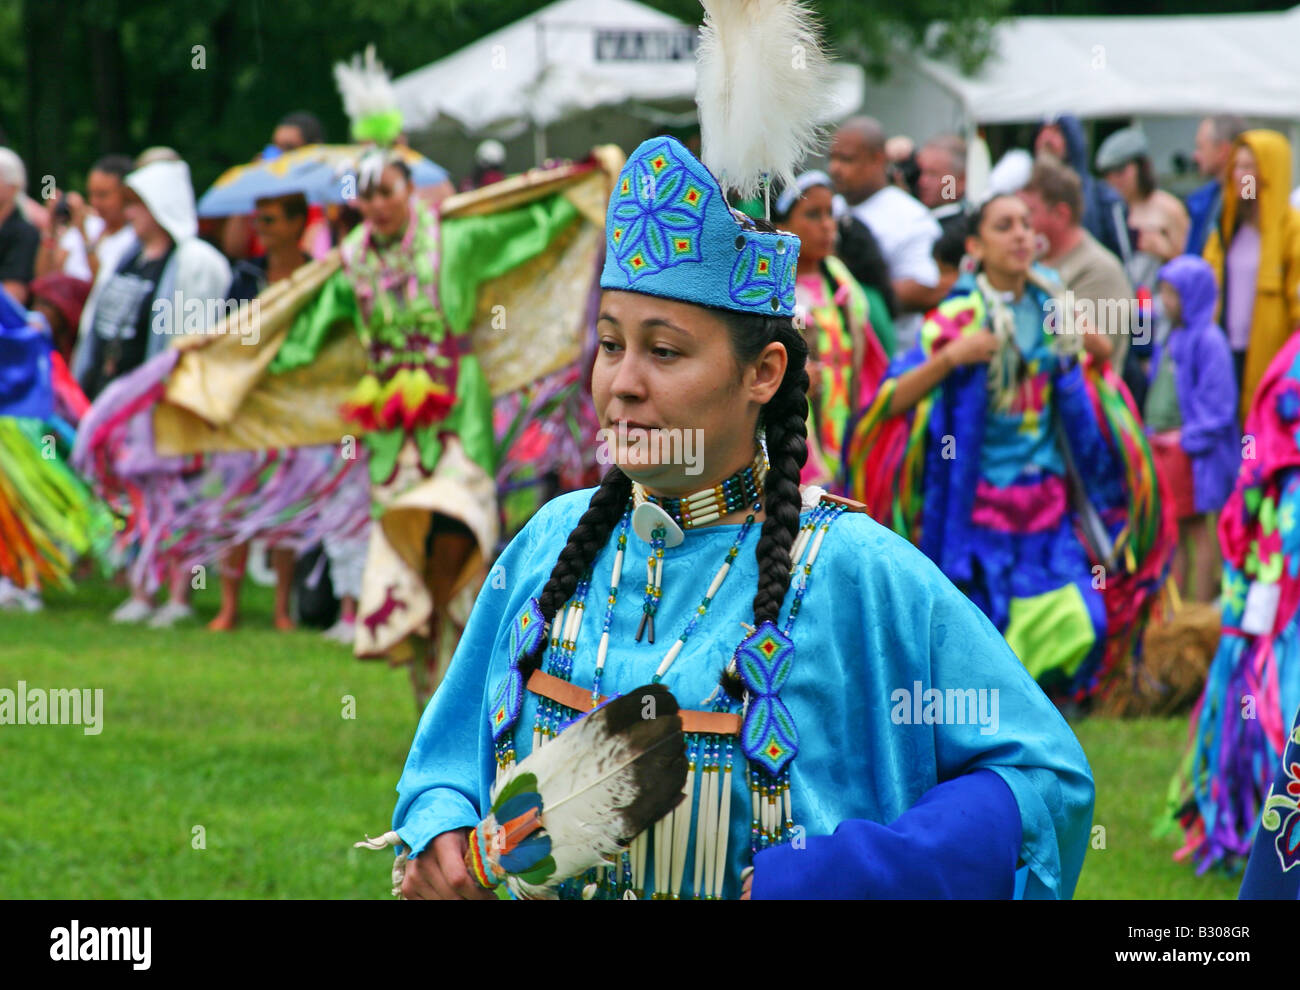 Native American Heritage Festival II, Bear Mountain, NY Stock Photo - Alamy